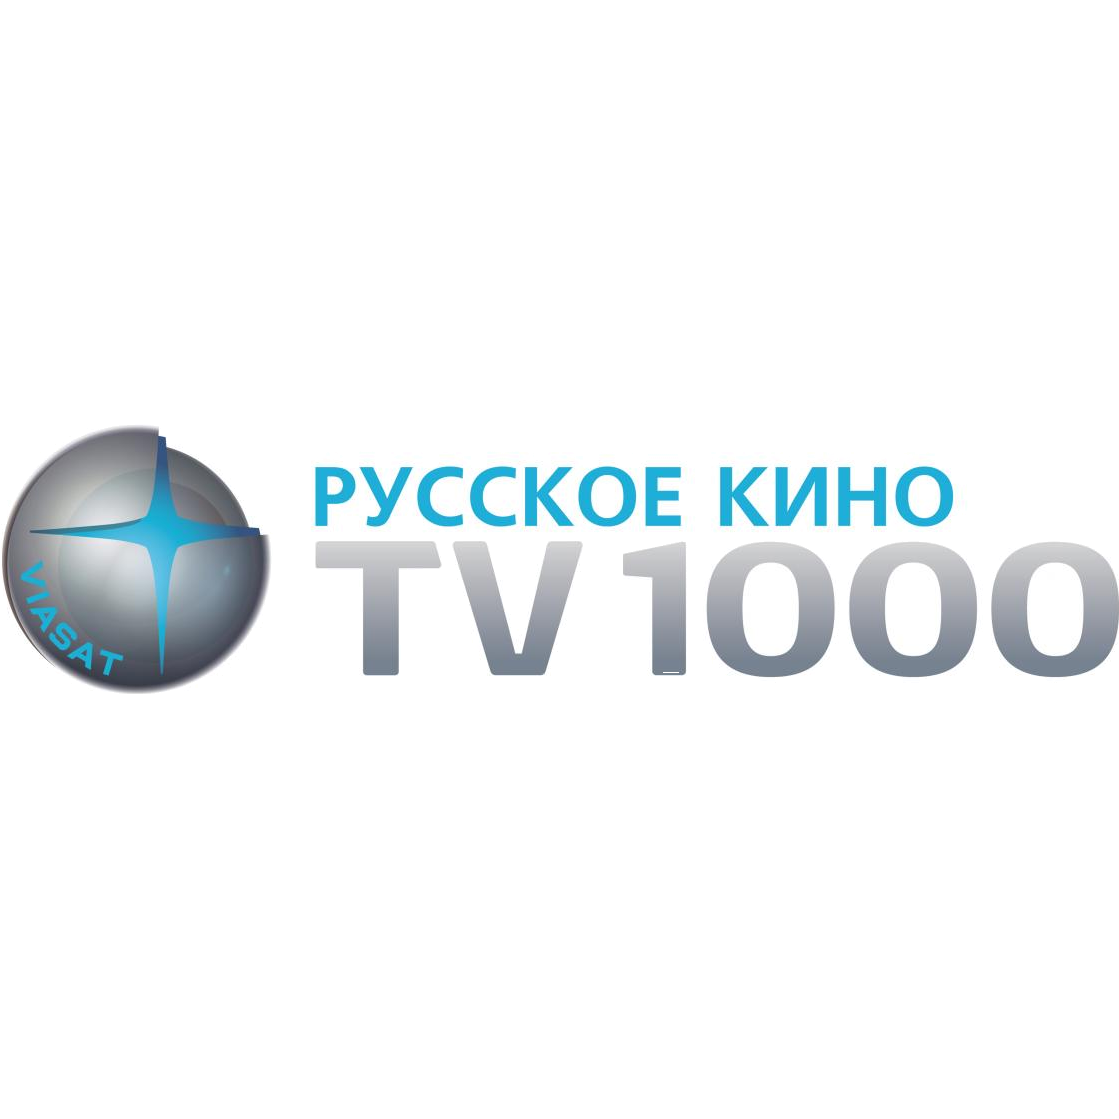 TV1000 Русское кино телевиз